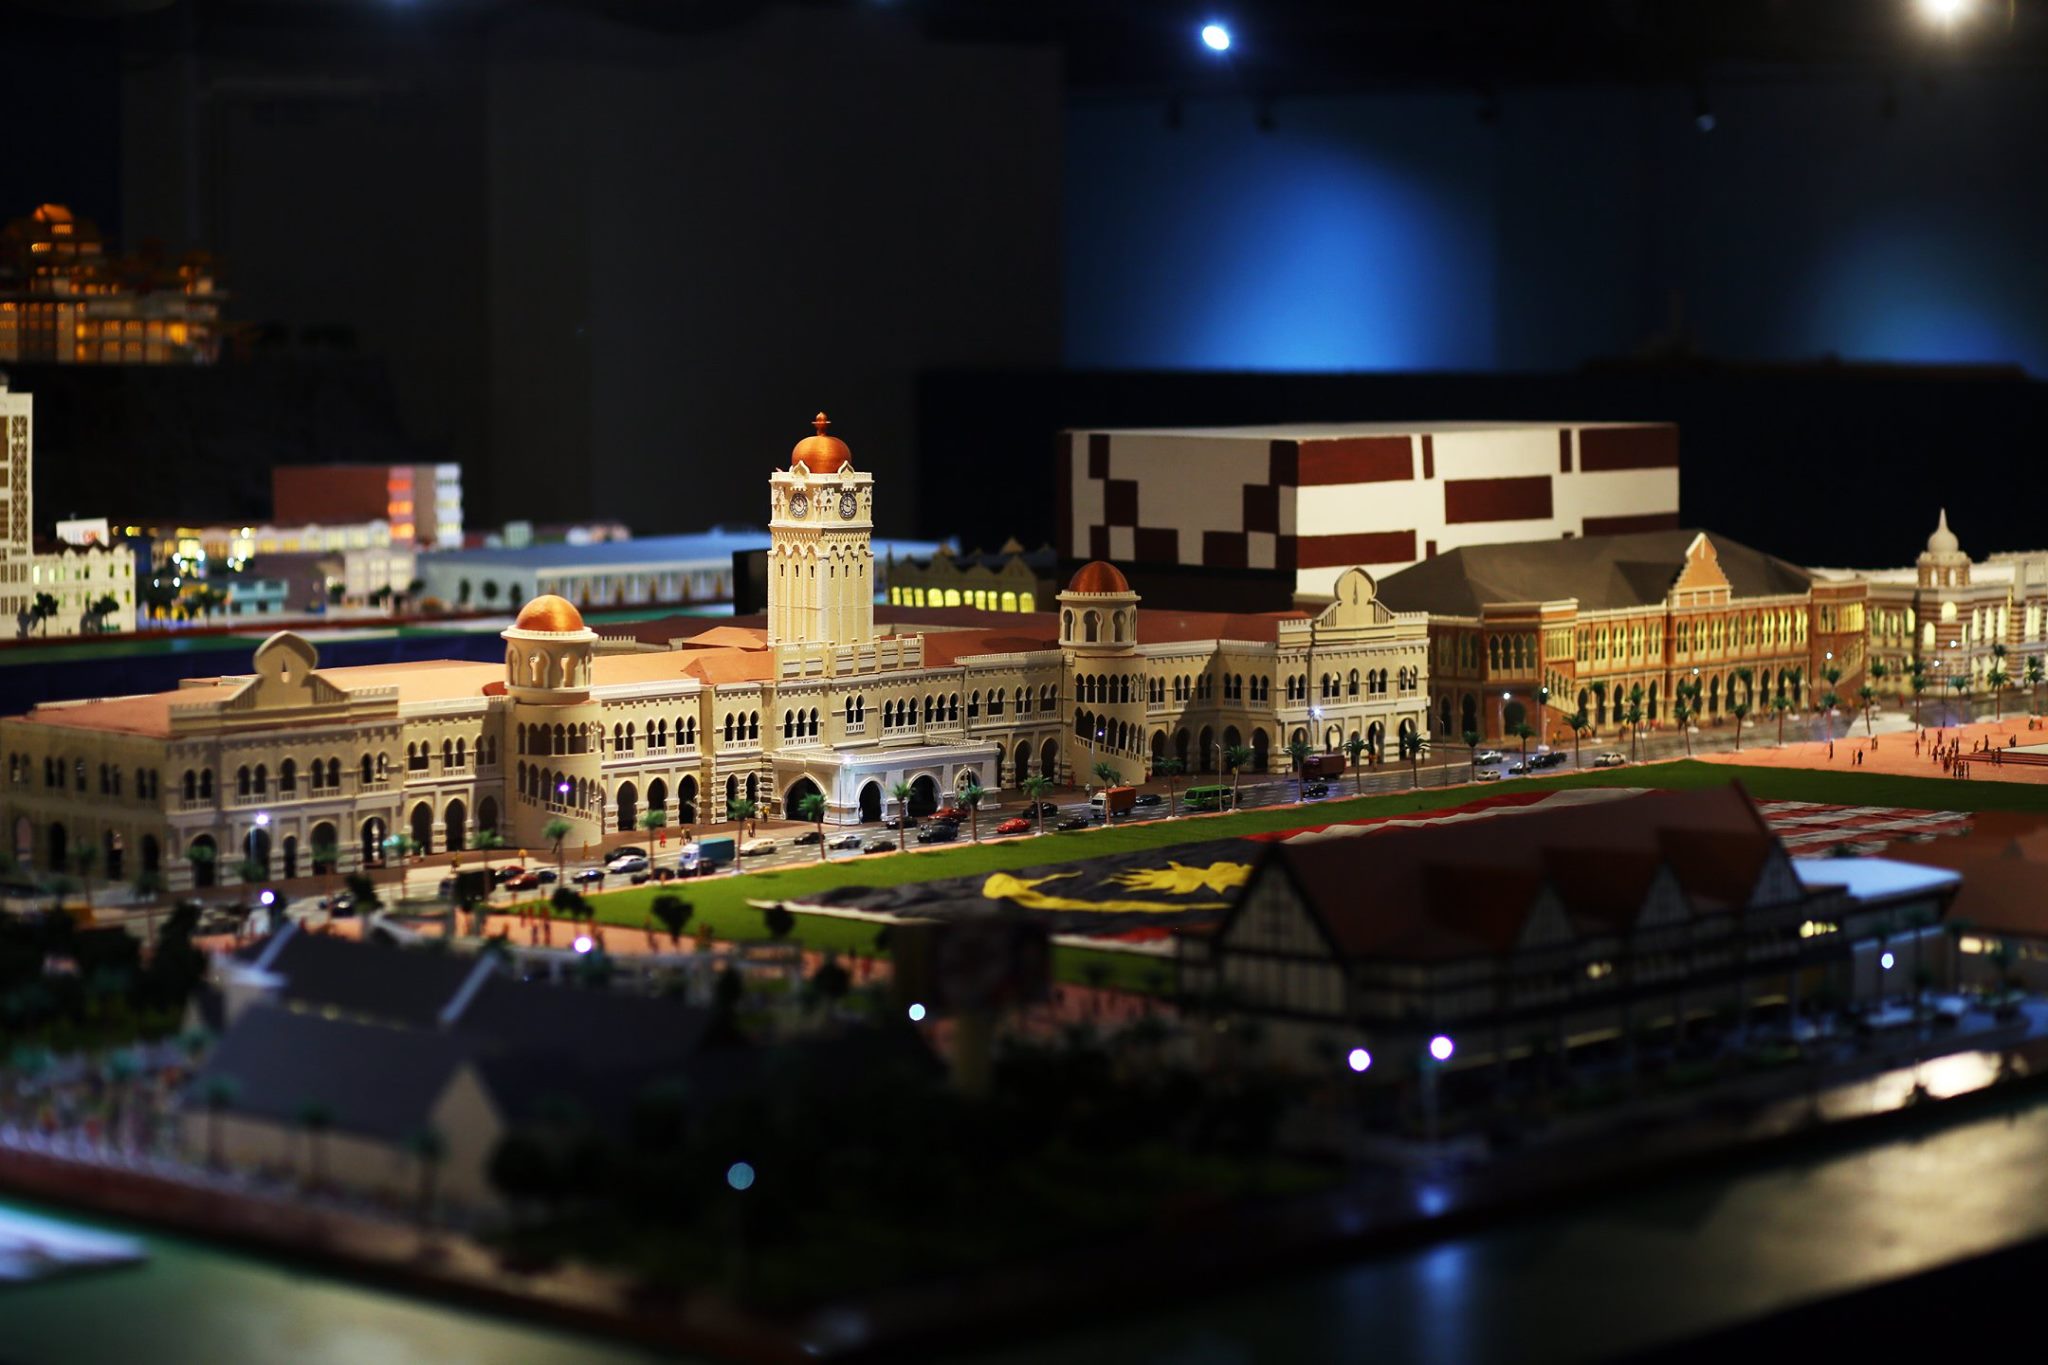 MinNature in Kuala Lumpur - dataran merdeka miniature